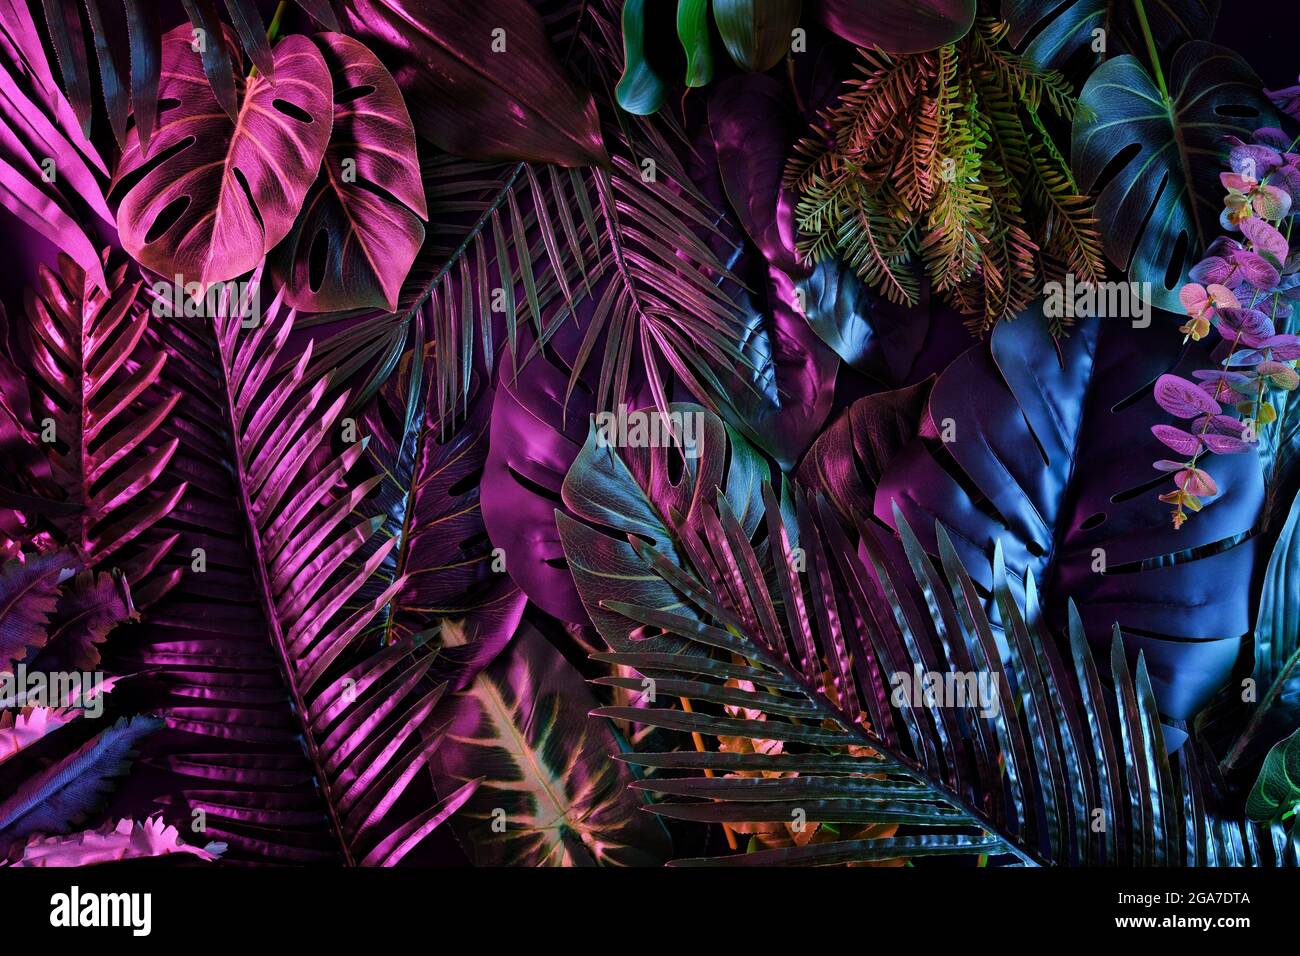 Jungle tropicale de tendance sombre avec éclairage au néon pour l'arrière-plan. Palmiers et plantes exotiques de style rétro et lumière fluorescente. Bot contemporain Banque D'Images